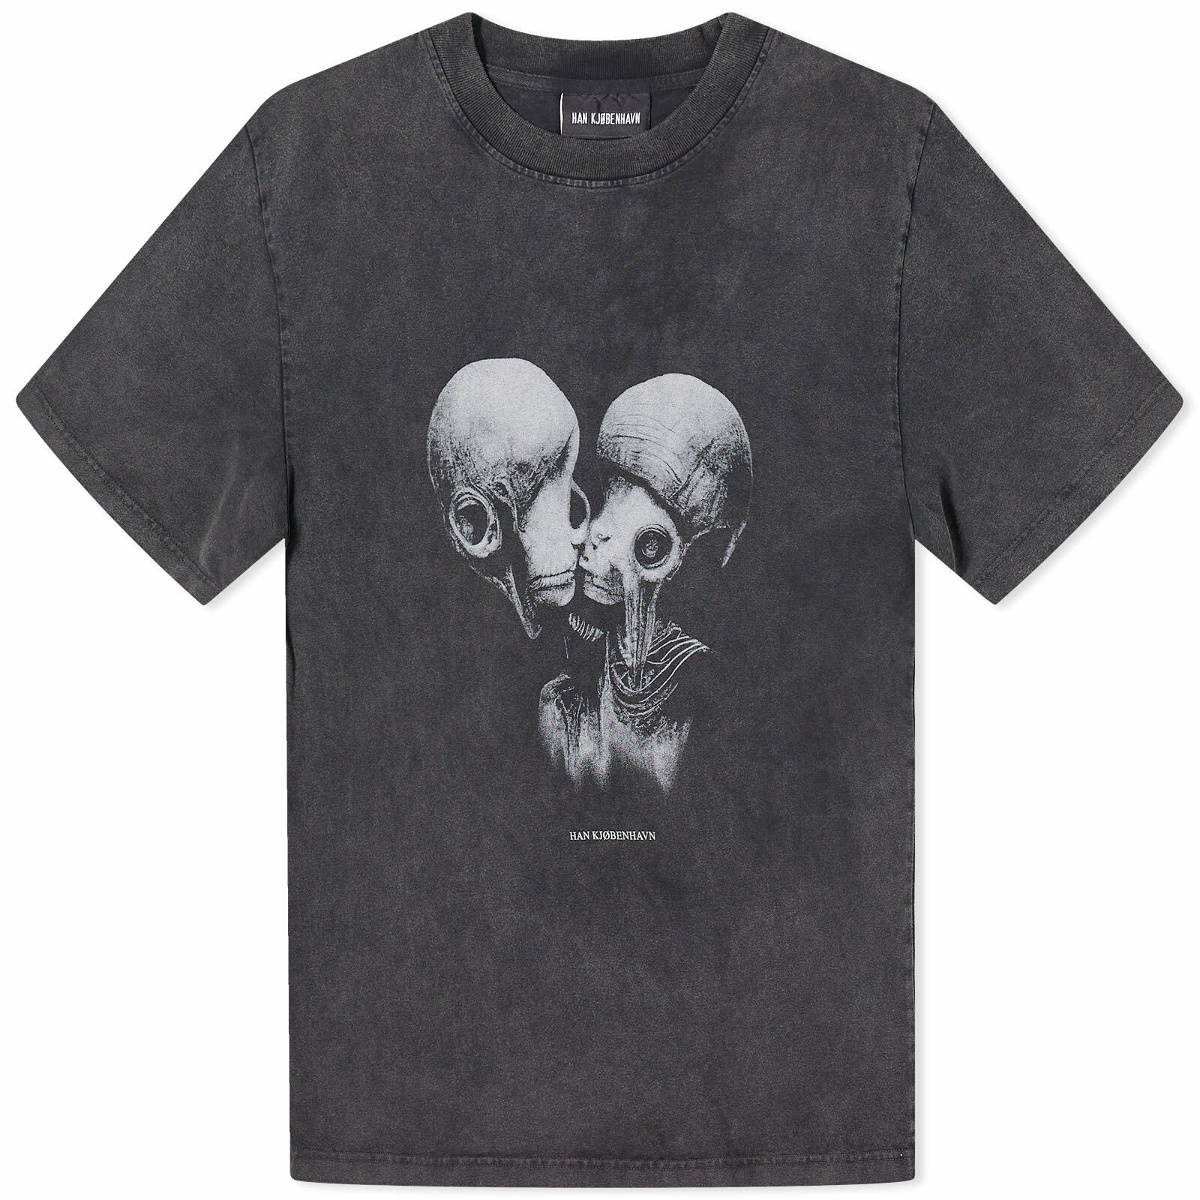 Photo: Han Kjobenhavn Men's Aliens Kissing Boxy T-Shirt in Dark Grey